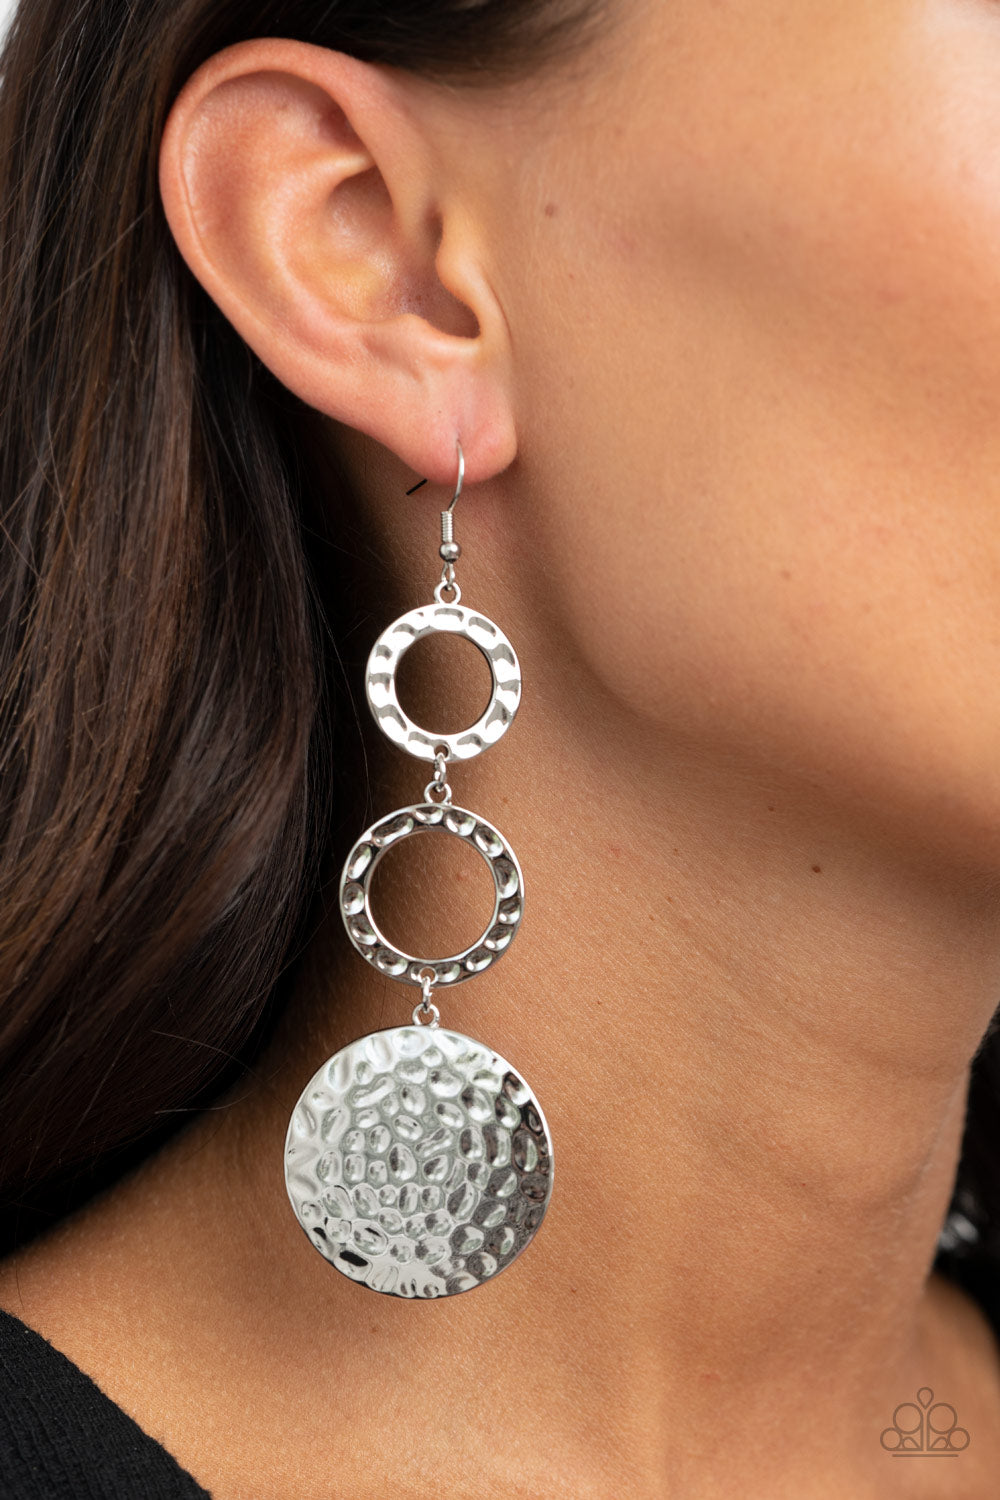 Blooming Baubles Silver
Earrings - Daria's Blings N Things